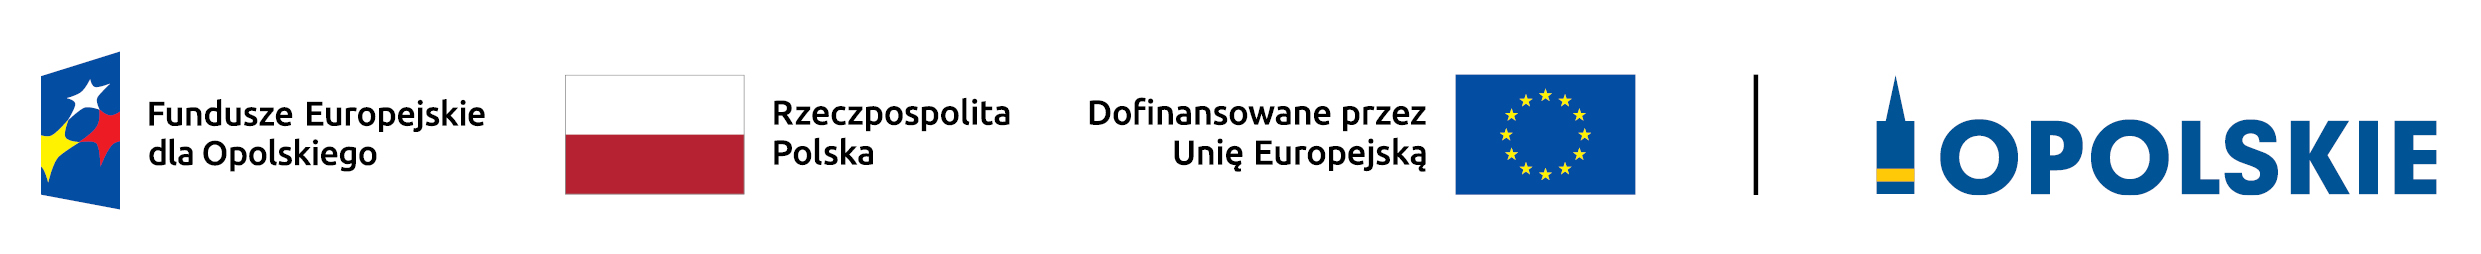 Fundusze Europejskie dla Opolskiego, Rzeczpospolita Polska, Dofinansowane przez Unię Europejską, Opolskie